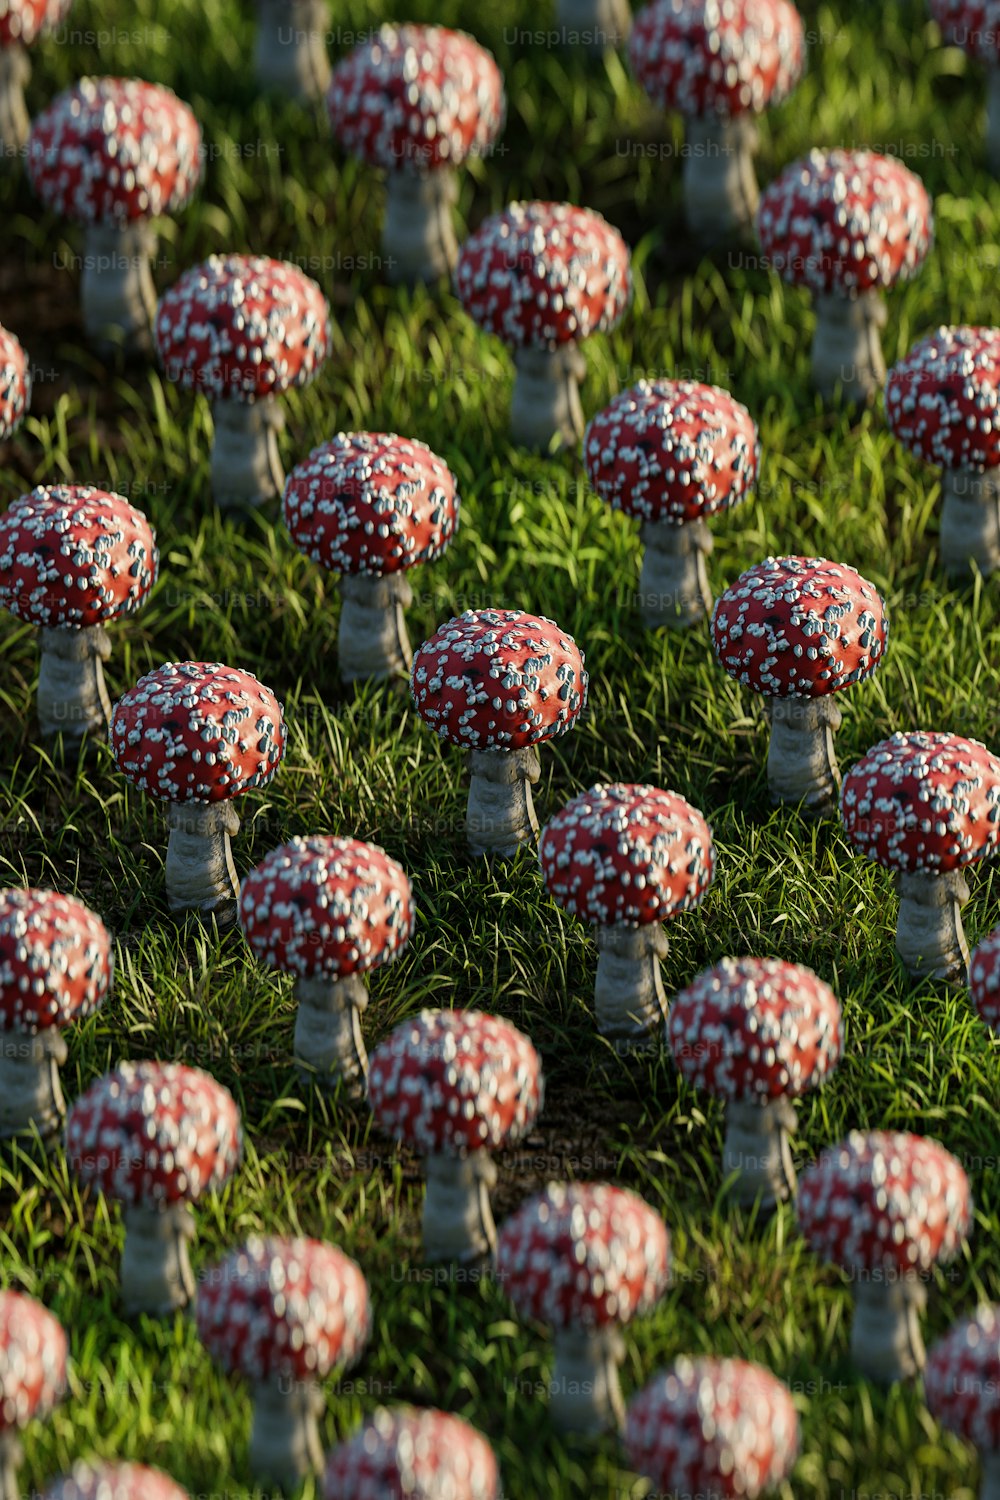 Un campo pieno di minuscoli funghi rossi e bianchi